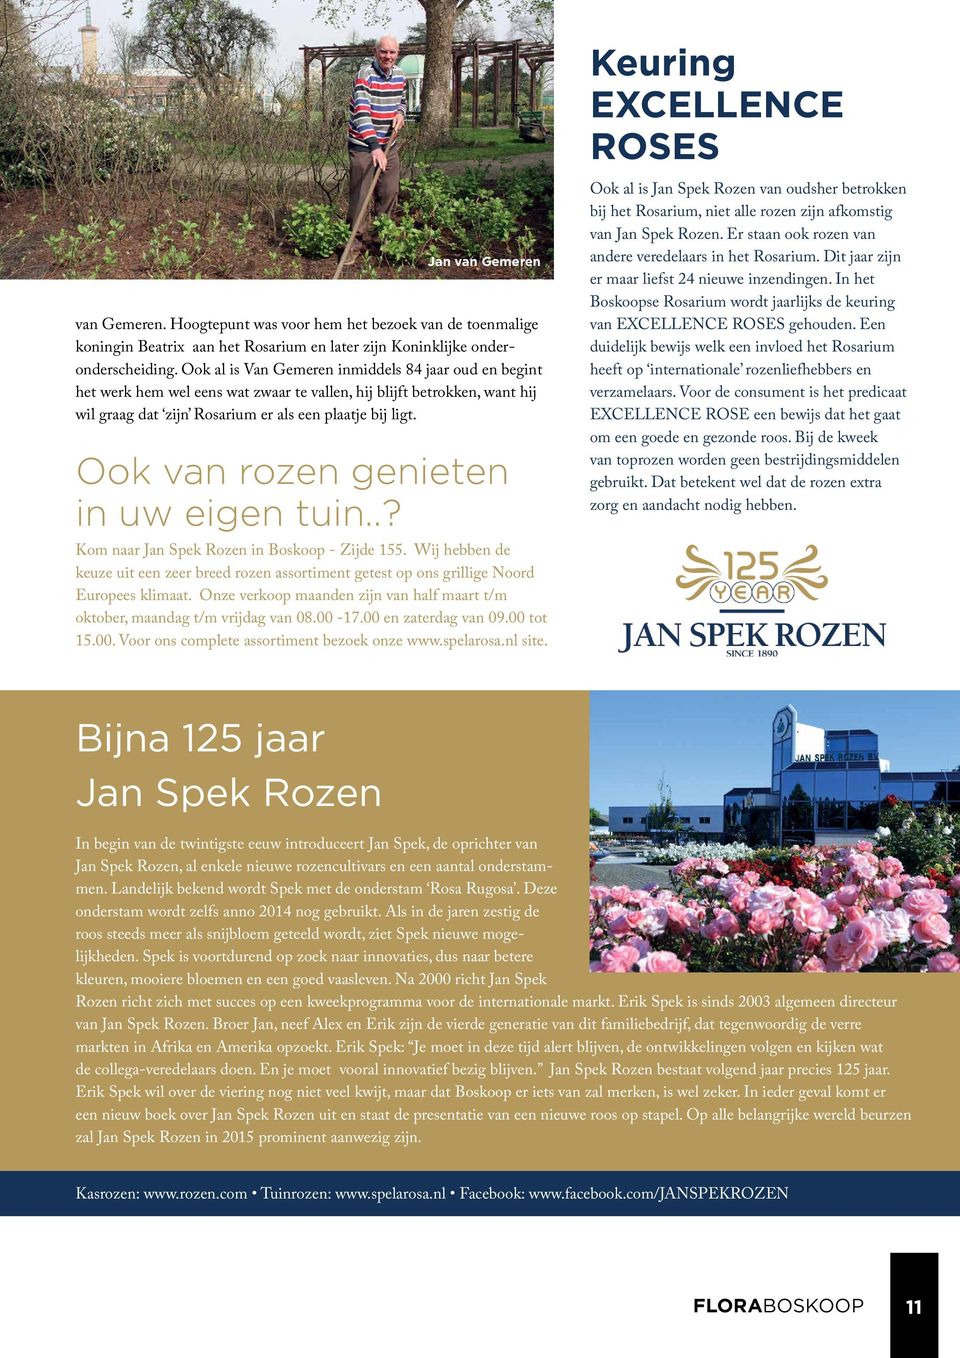 Ook van rozen genieten in uw eigen tuin..? Kom naar Jan Spek Rozen in Boskoop - Zijde 155. Wij hebben de keuze uit een zeer breed rozen assortiment getest op ons grillige Noord Europees klimaat.